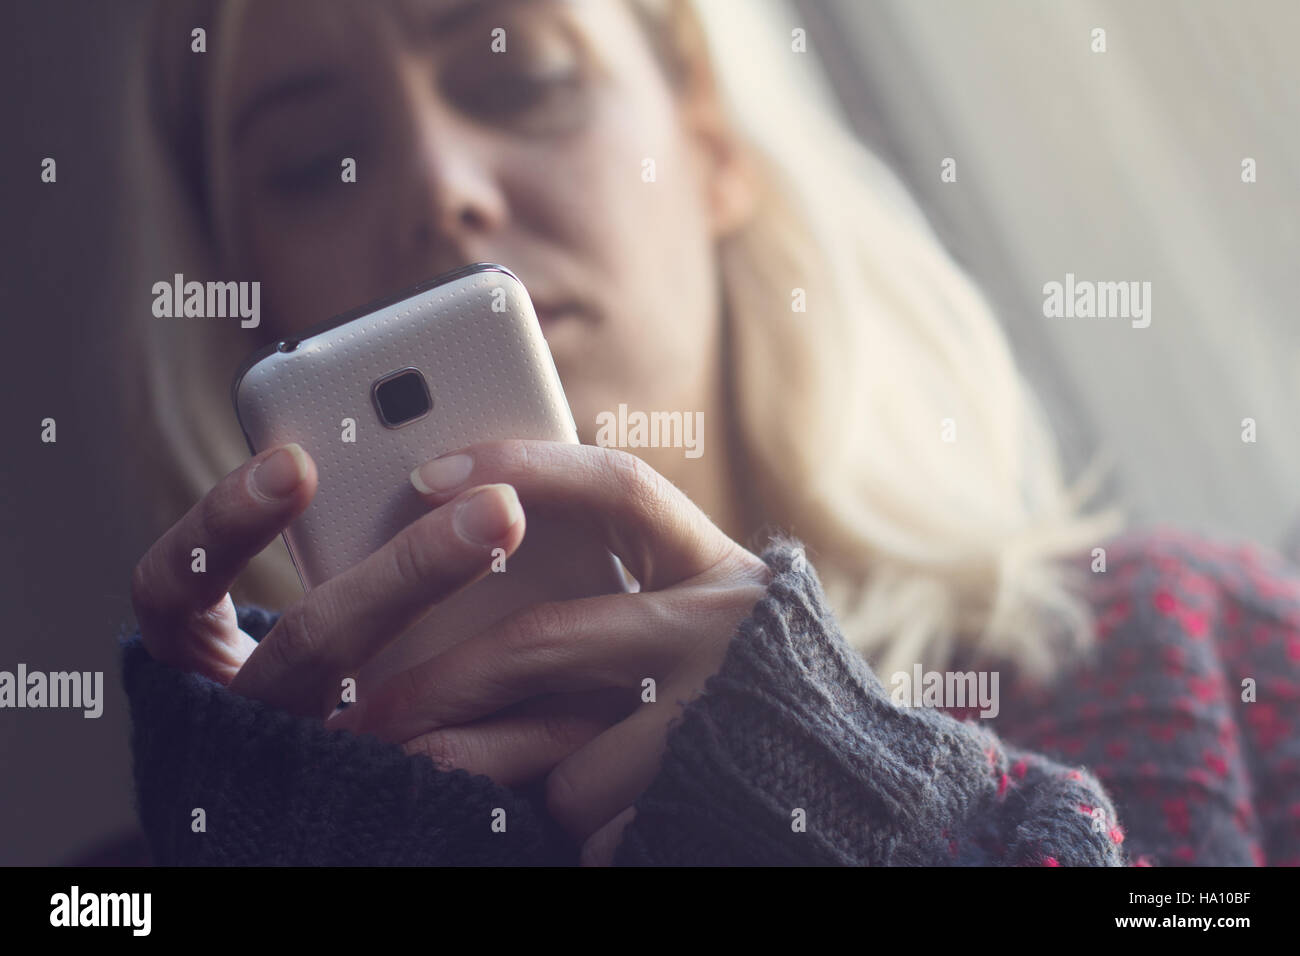 Vorderansicht der blonden Frau mit langen Haaren und dunklen Pullover hält eine weiße Telefon im Morgenlicht Stockfoto